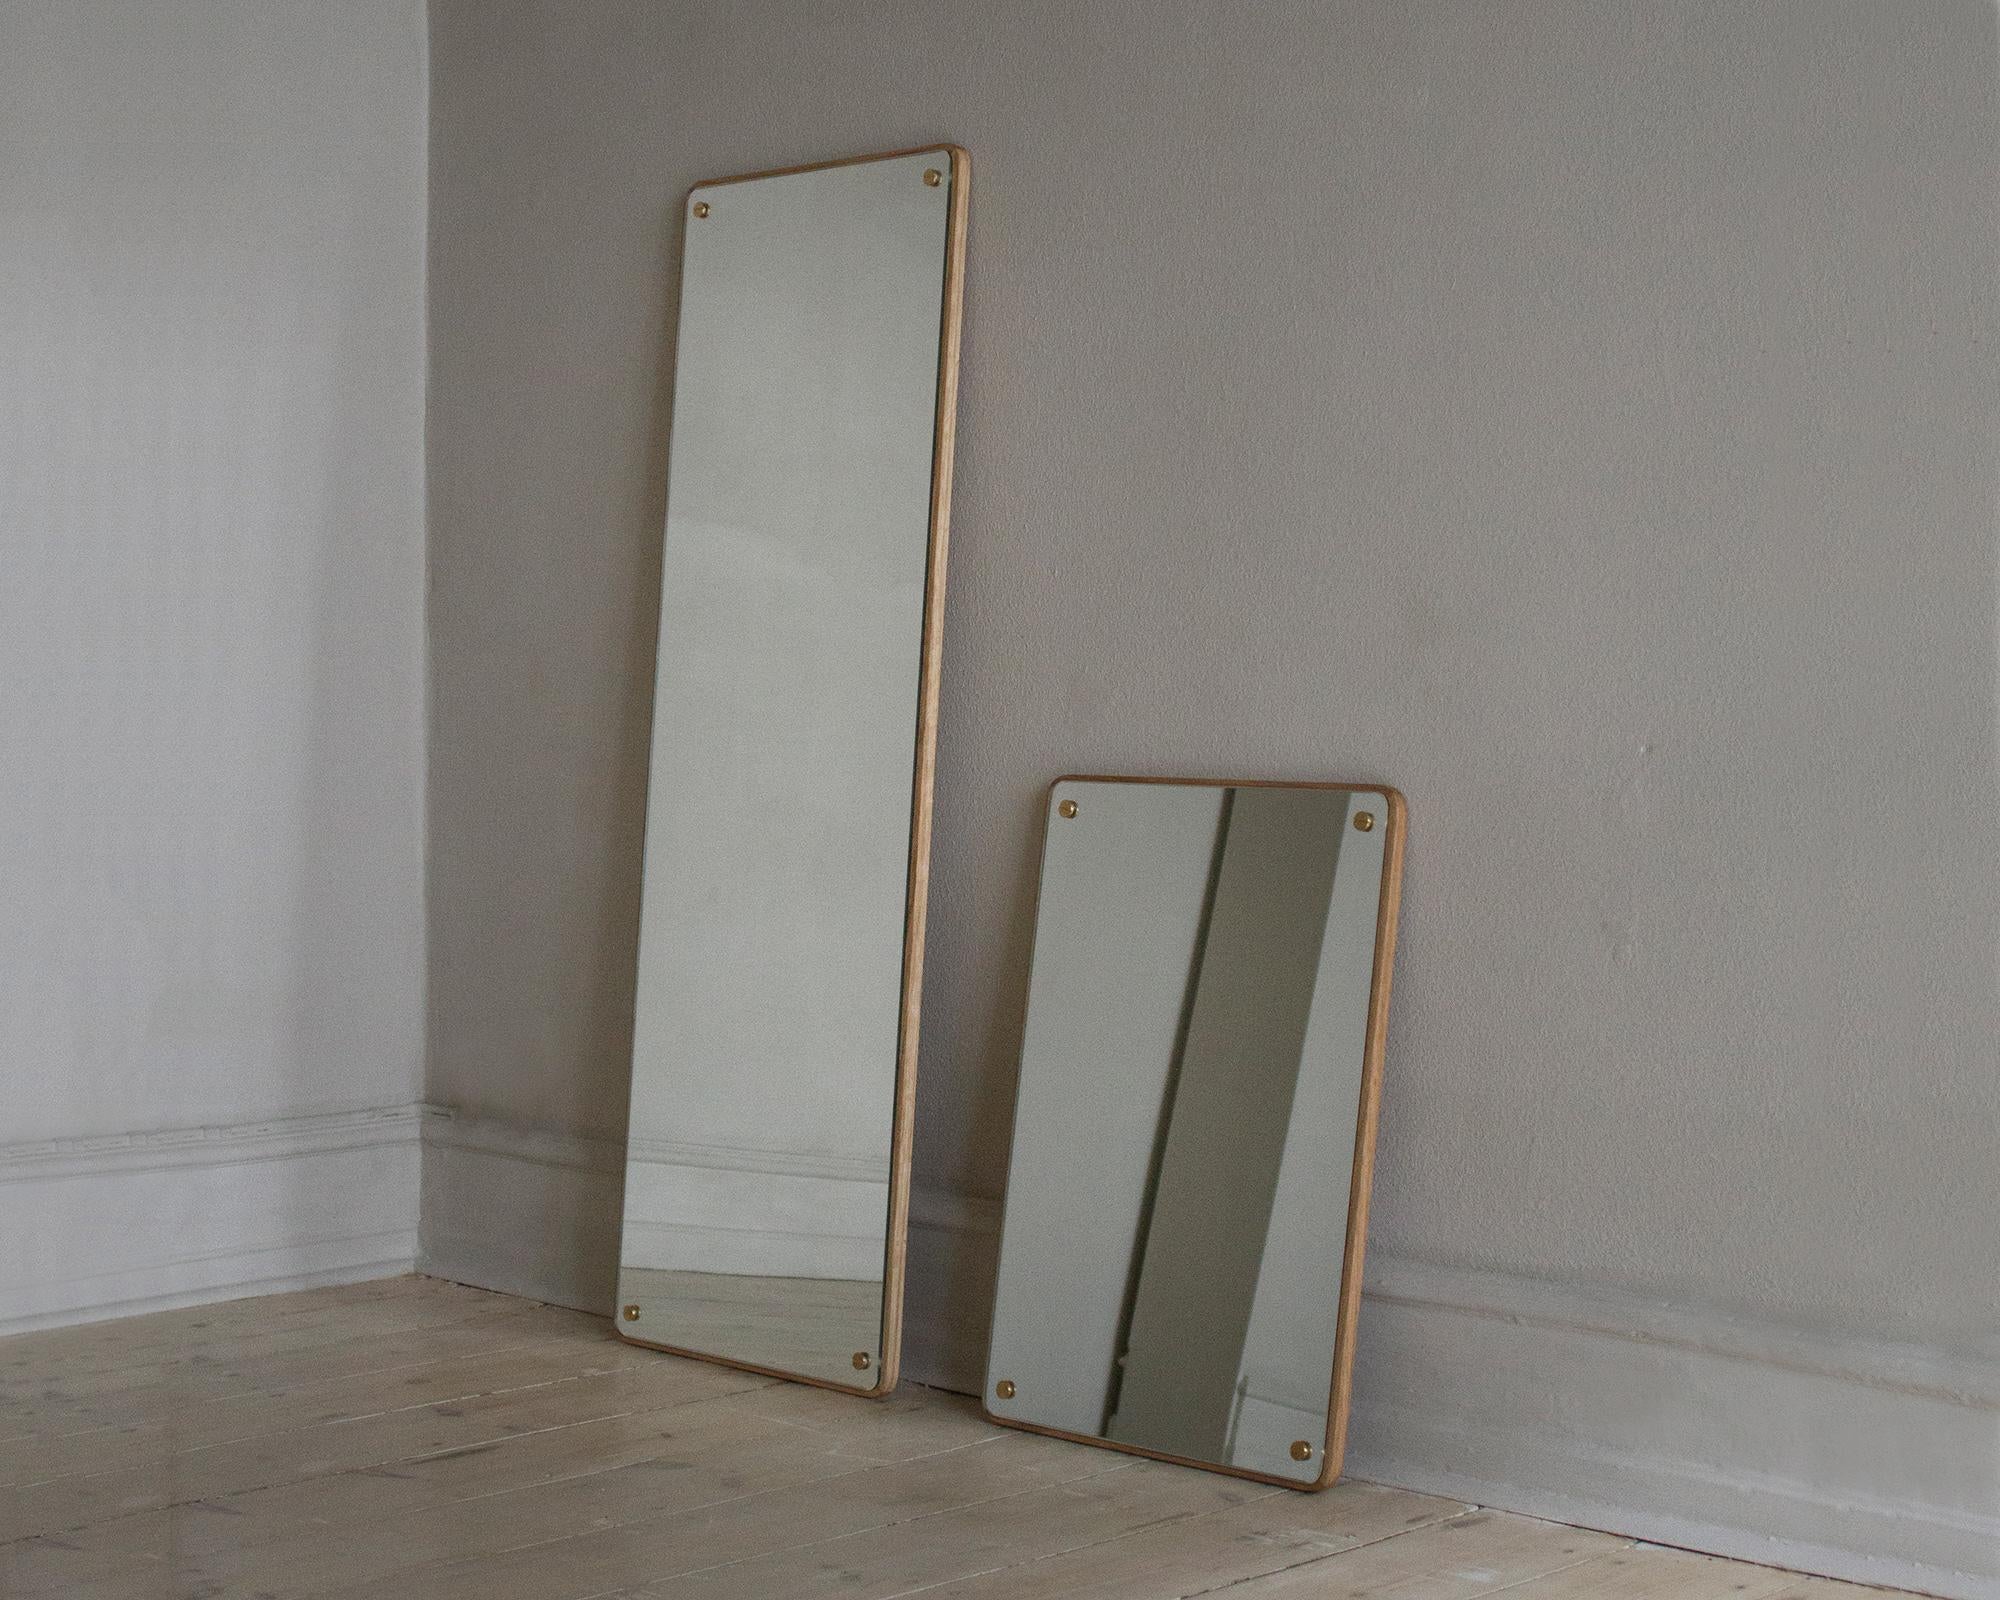 Le miroir rectangulaire est une version actualisée d'un modèle classique. Avec des dimensions soigneusement articulées pour s'adapter à un certain nombre d'utilisations, le miroir classique est monté sur un dossier en chêne massif. Les vis visibles